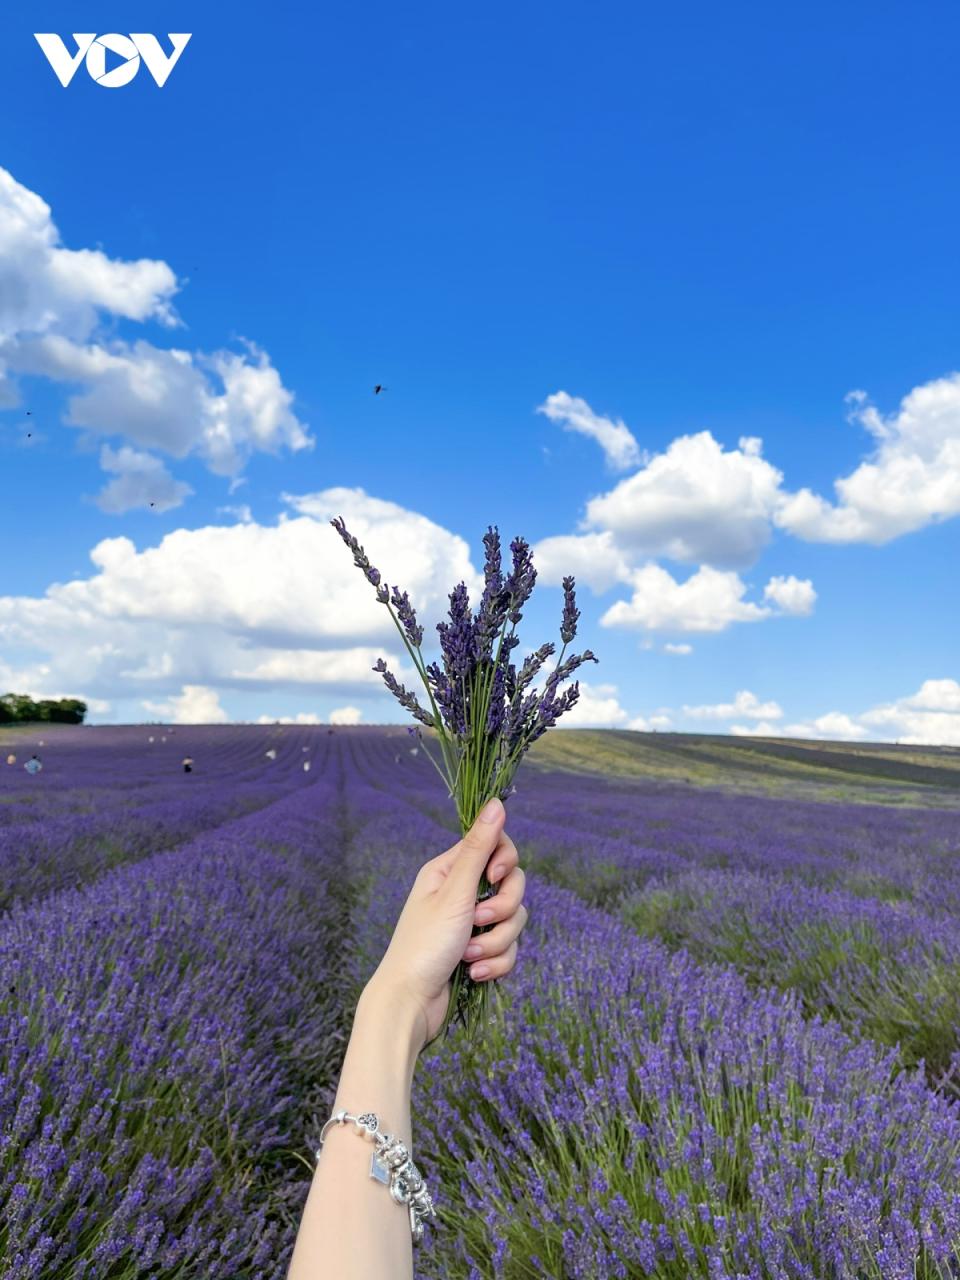 Chẳng Cần Đến Pháp Cũng Được Ngắm Hoa Lavender Tuyệt Đẹp | Vov.Vn